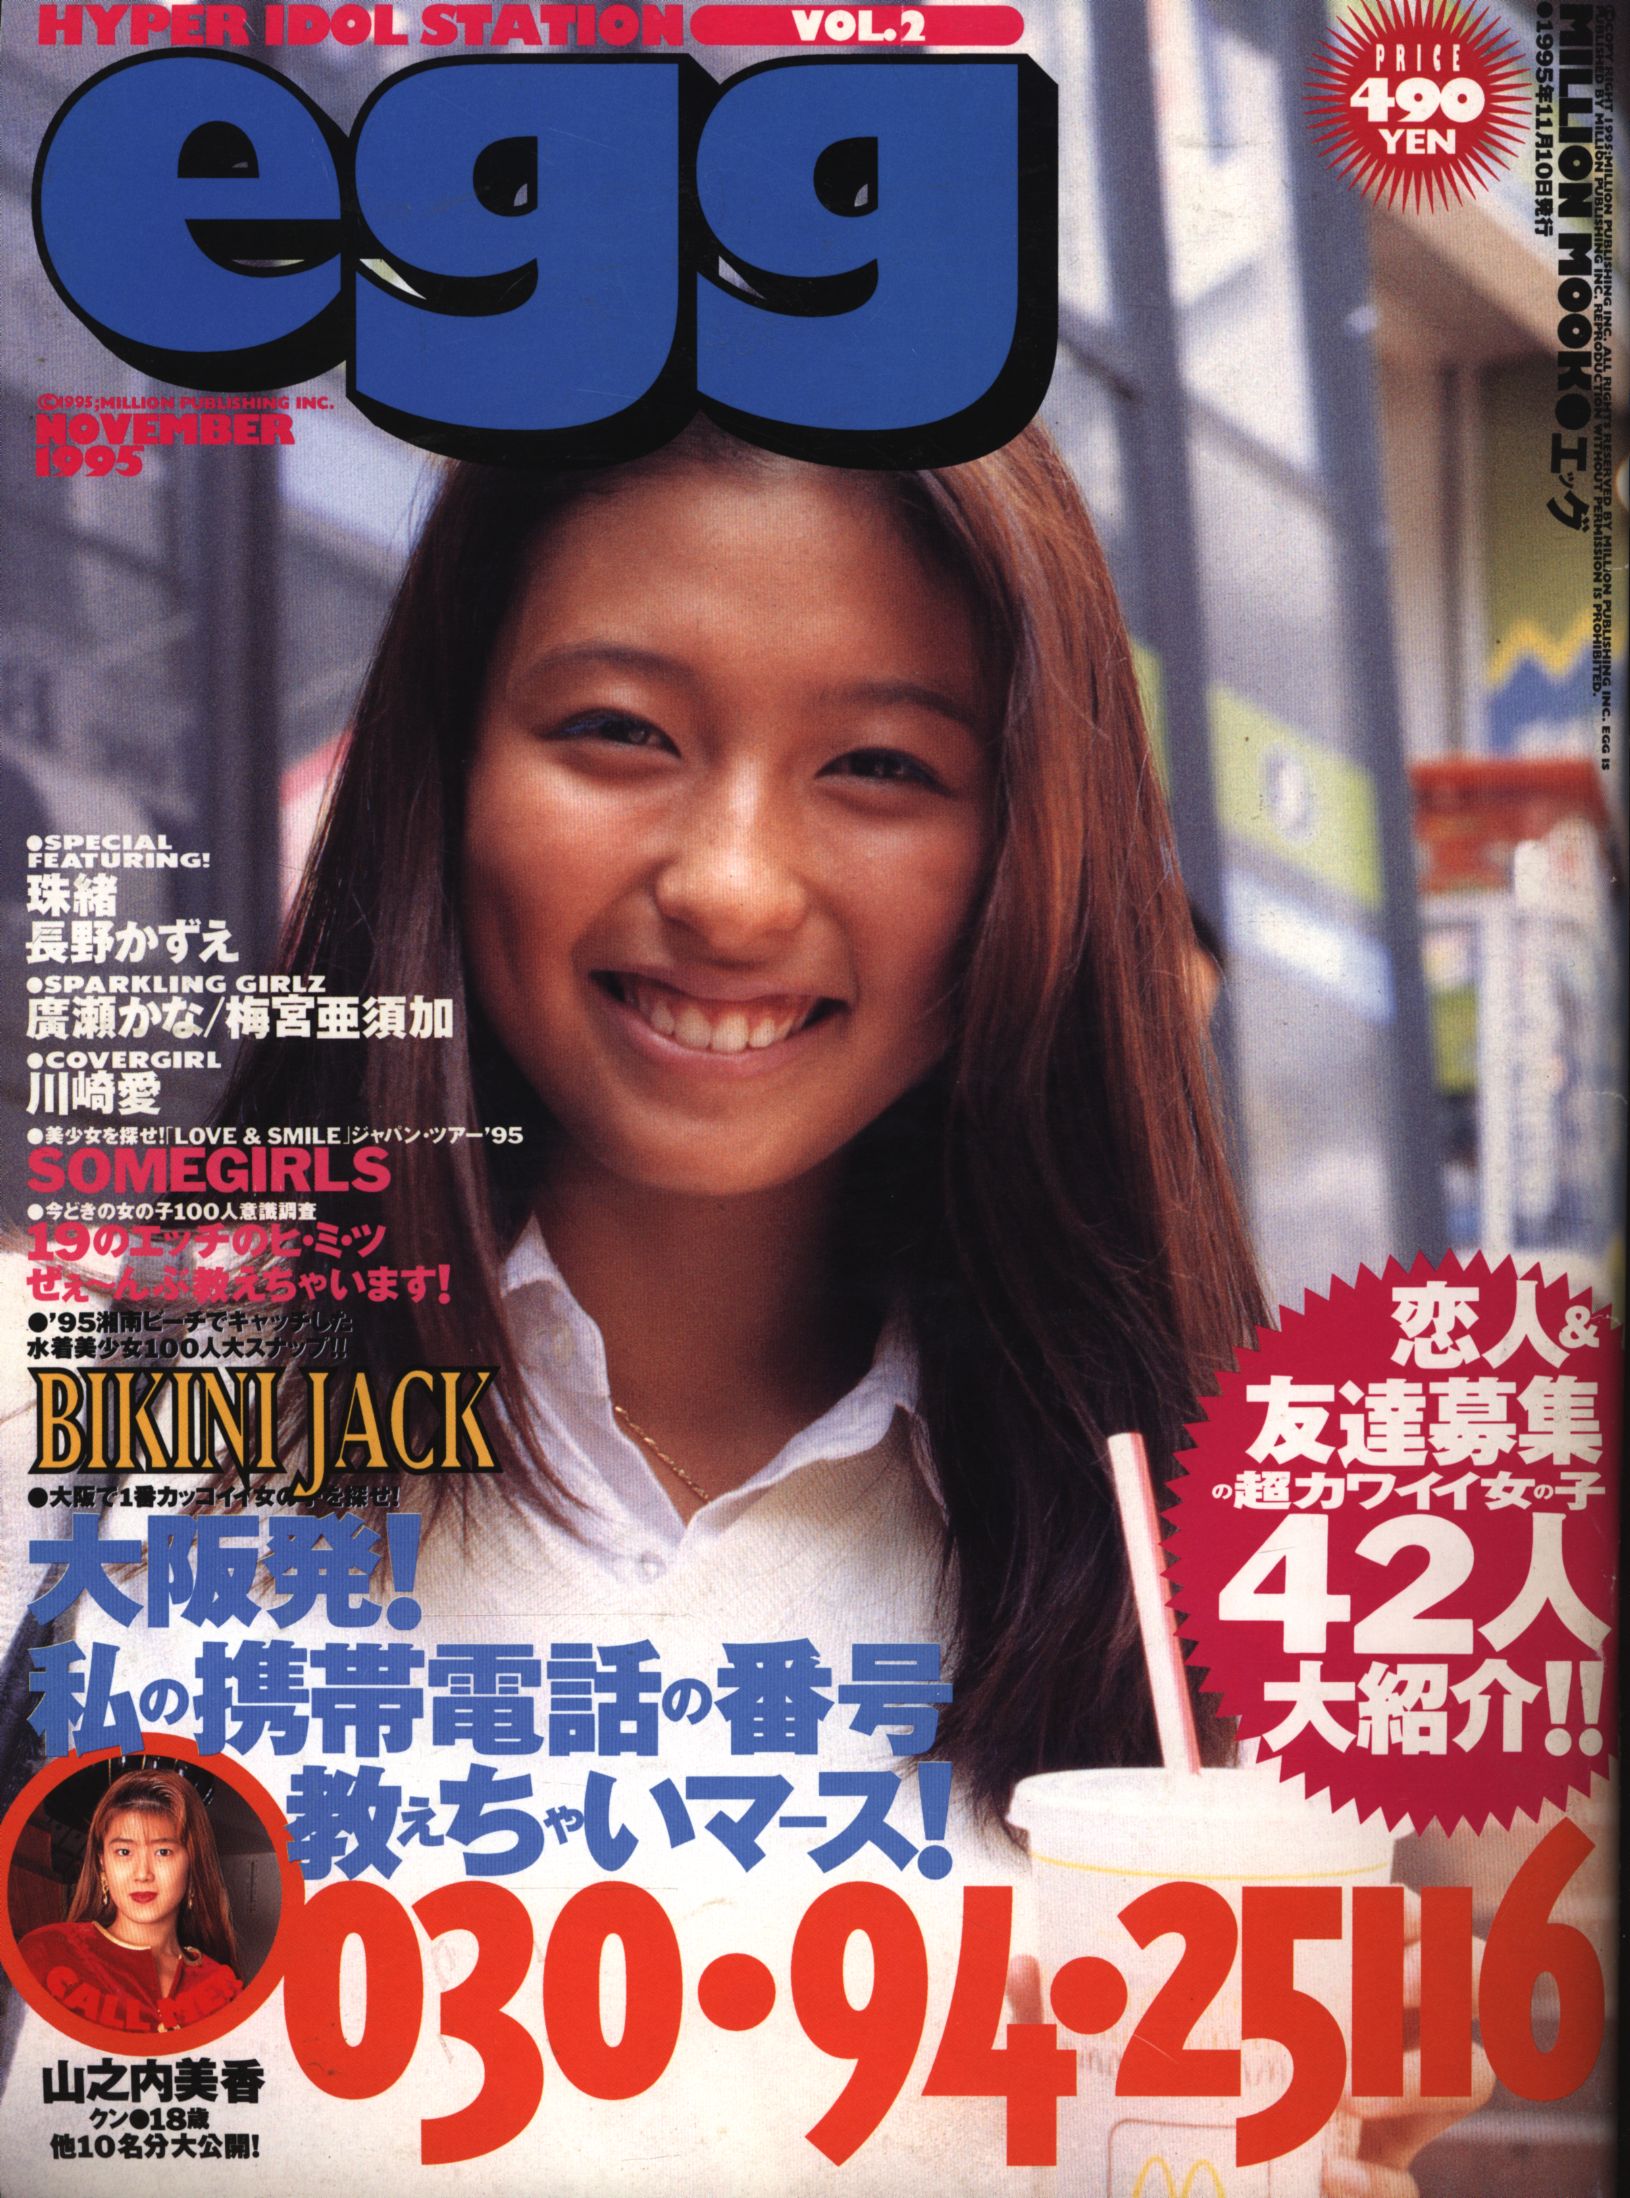 雑誌 egg 11冊セットVOL.1 1995〜 【限定価格セール 